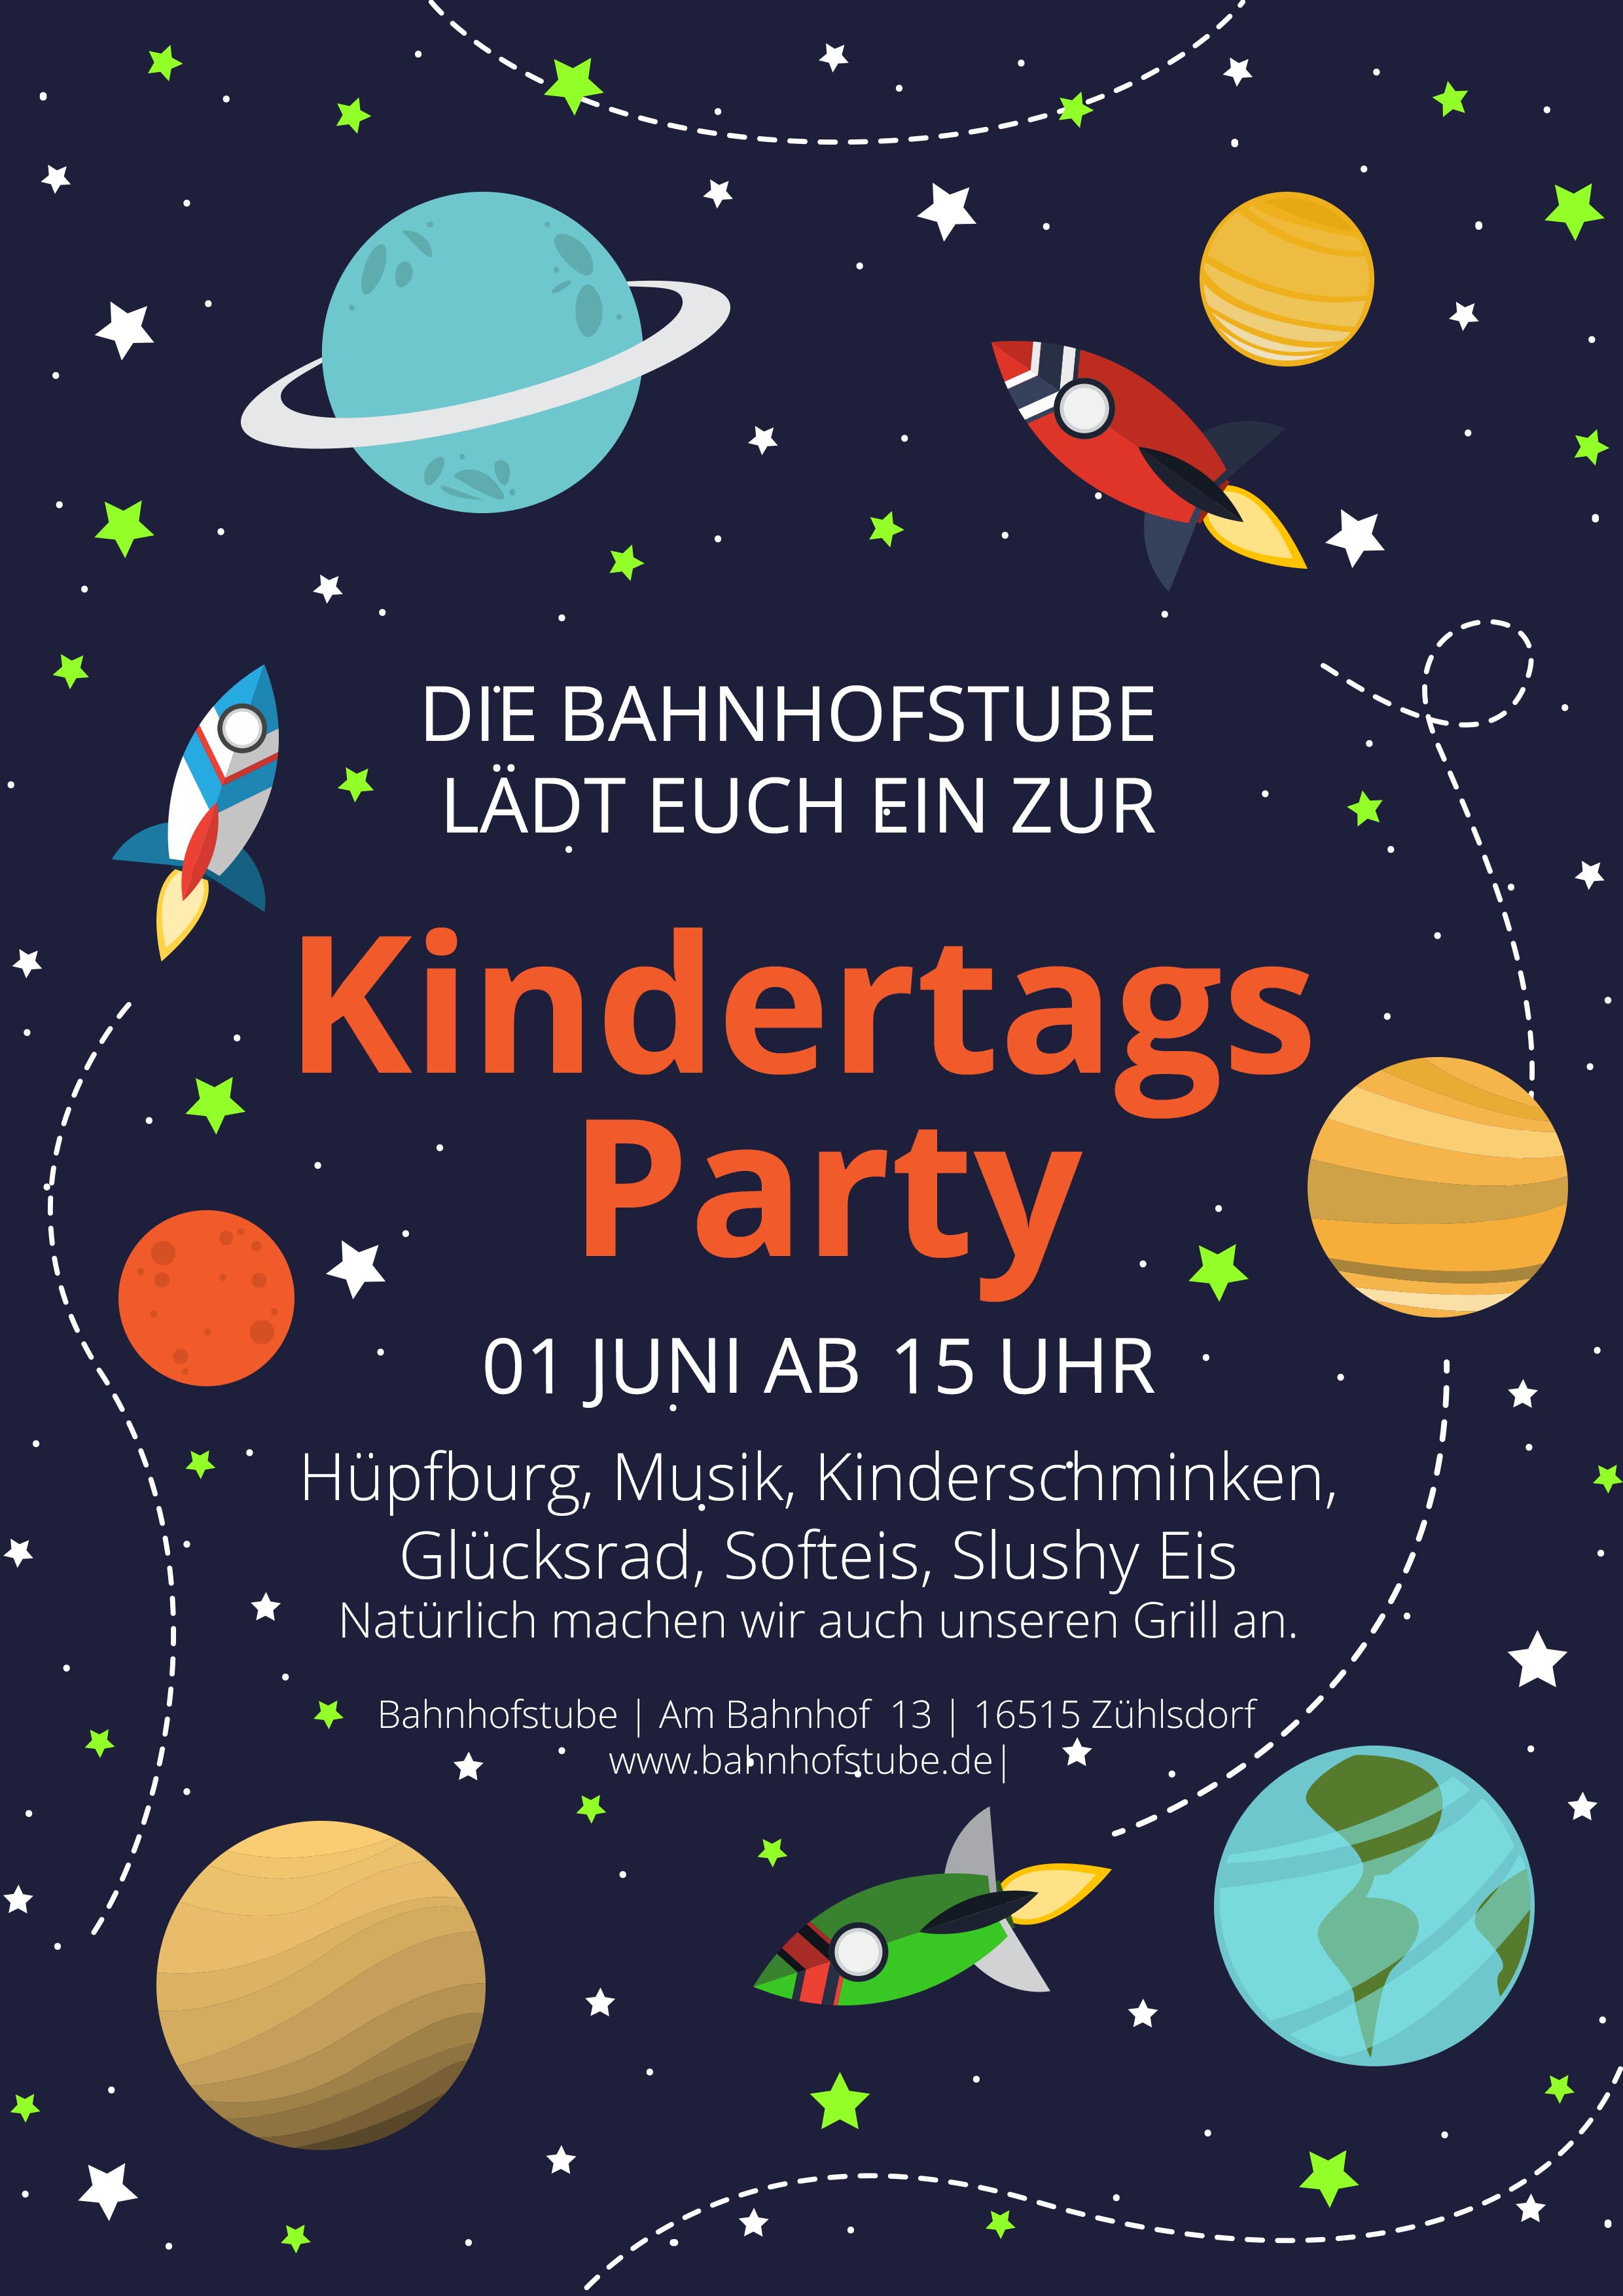 Kindertags Party in der Bahnhofstube Zühlsdorf